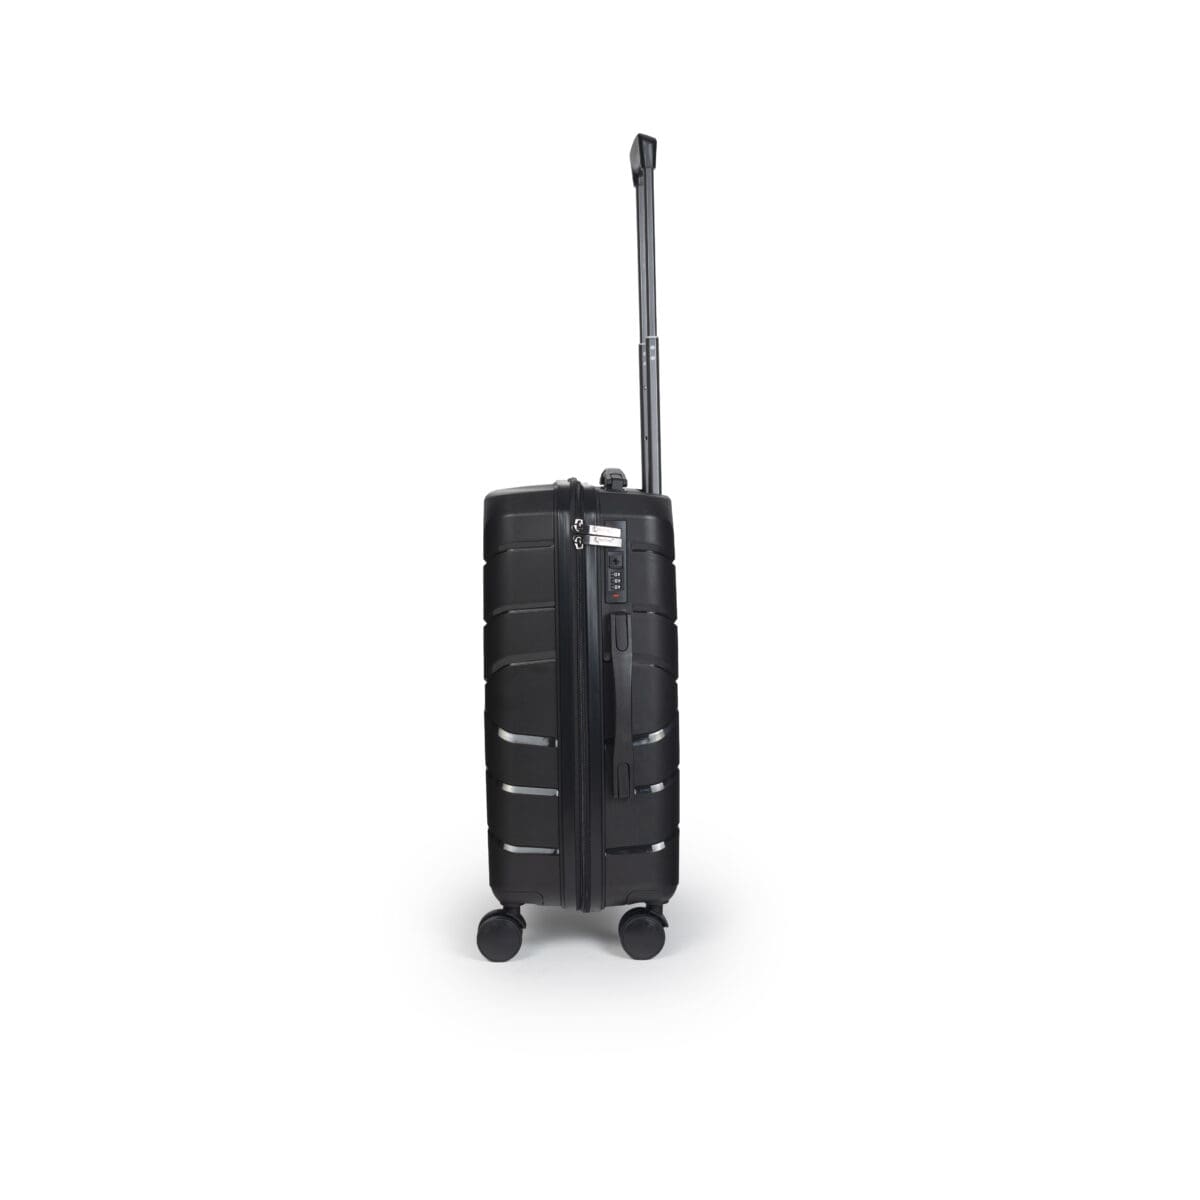 Βαλίτσα χειραποσκευή με tsa lock διπλά ροδάκια από πολυπροπυλένιο άθραυστο υλικό σε μαύρο χρώμα